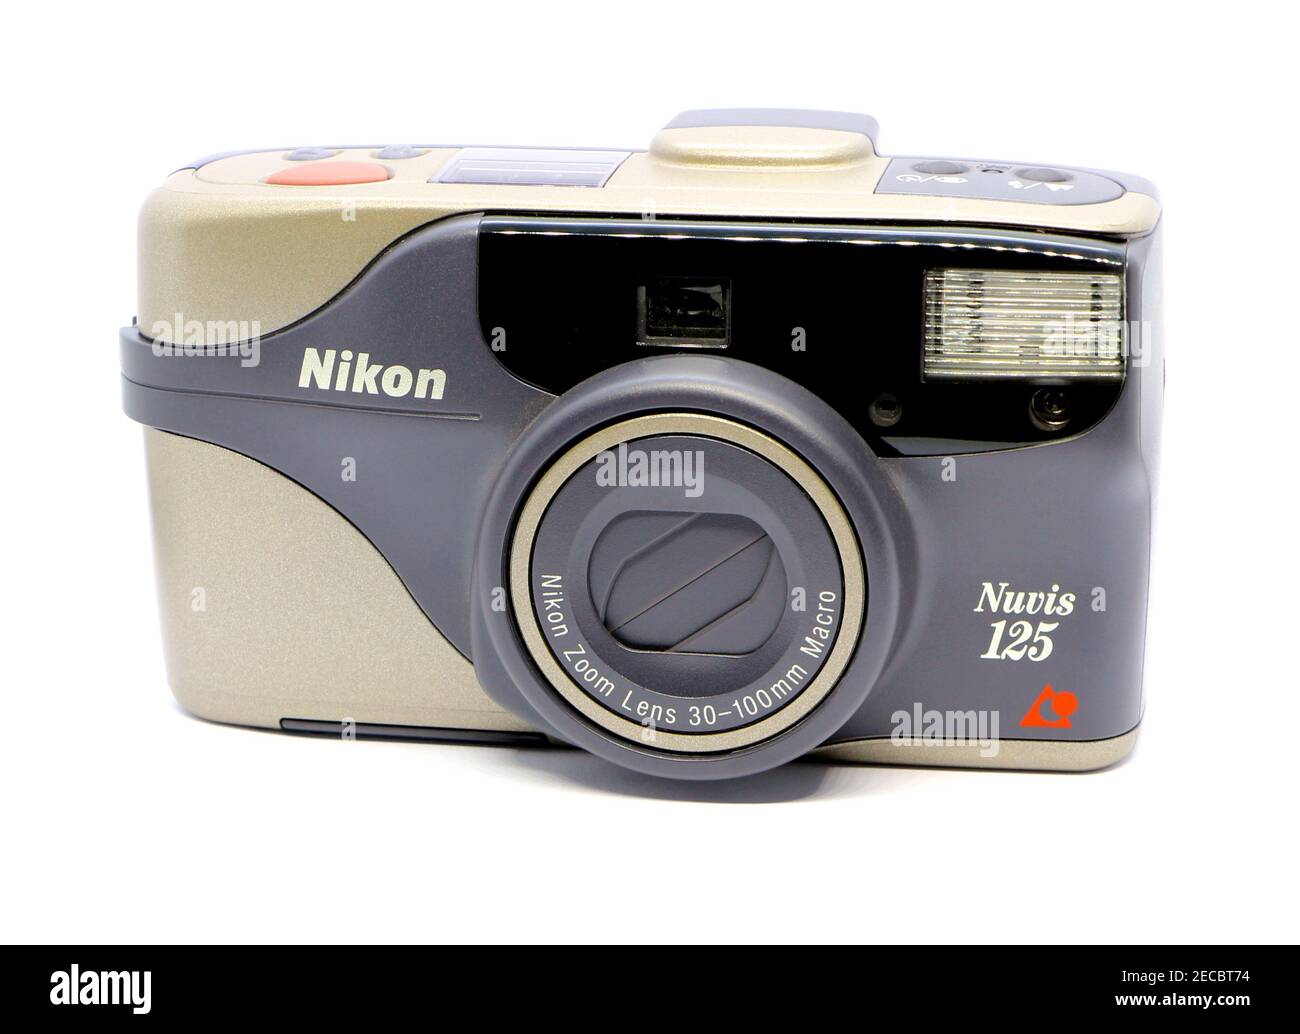 Photo d'un ancien appareil 125 photo Nikon Nuvis 35mm gris et argent avec  flash intégré avec un objectif zoom 30-100 mm et une macro Photo Stock -  Alamy